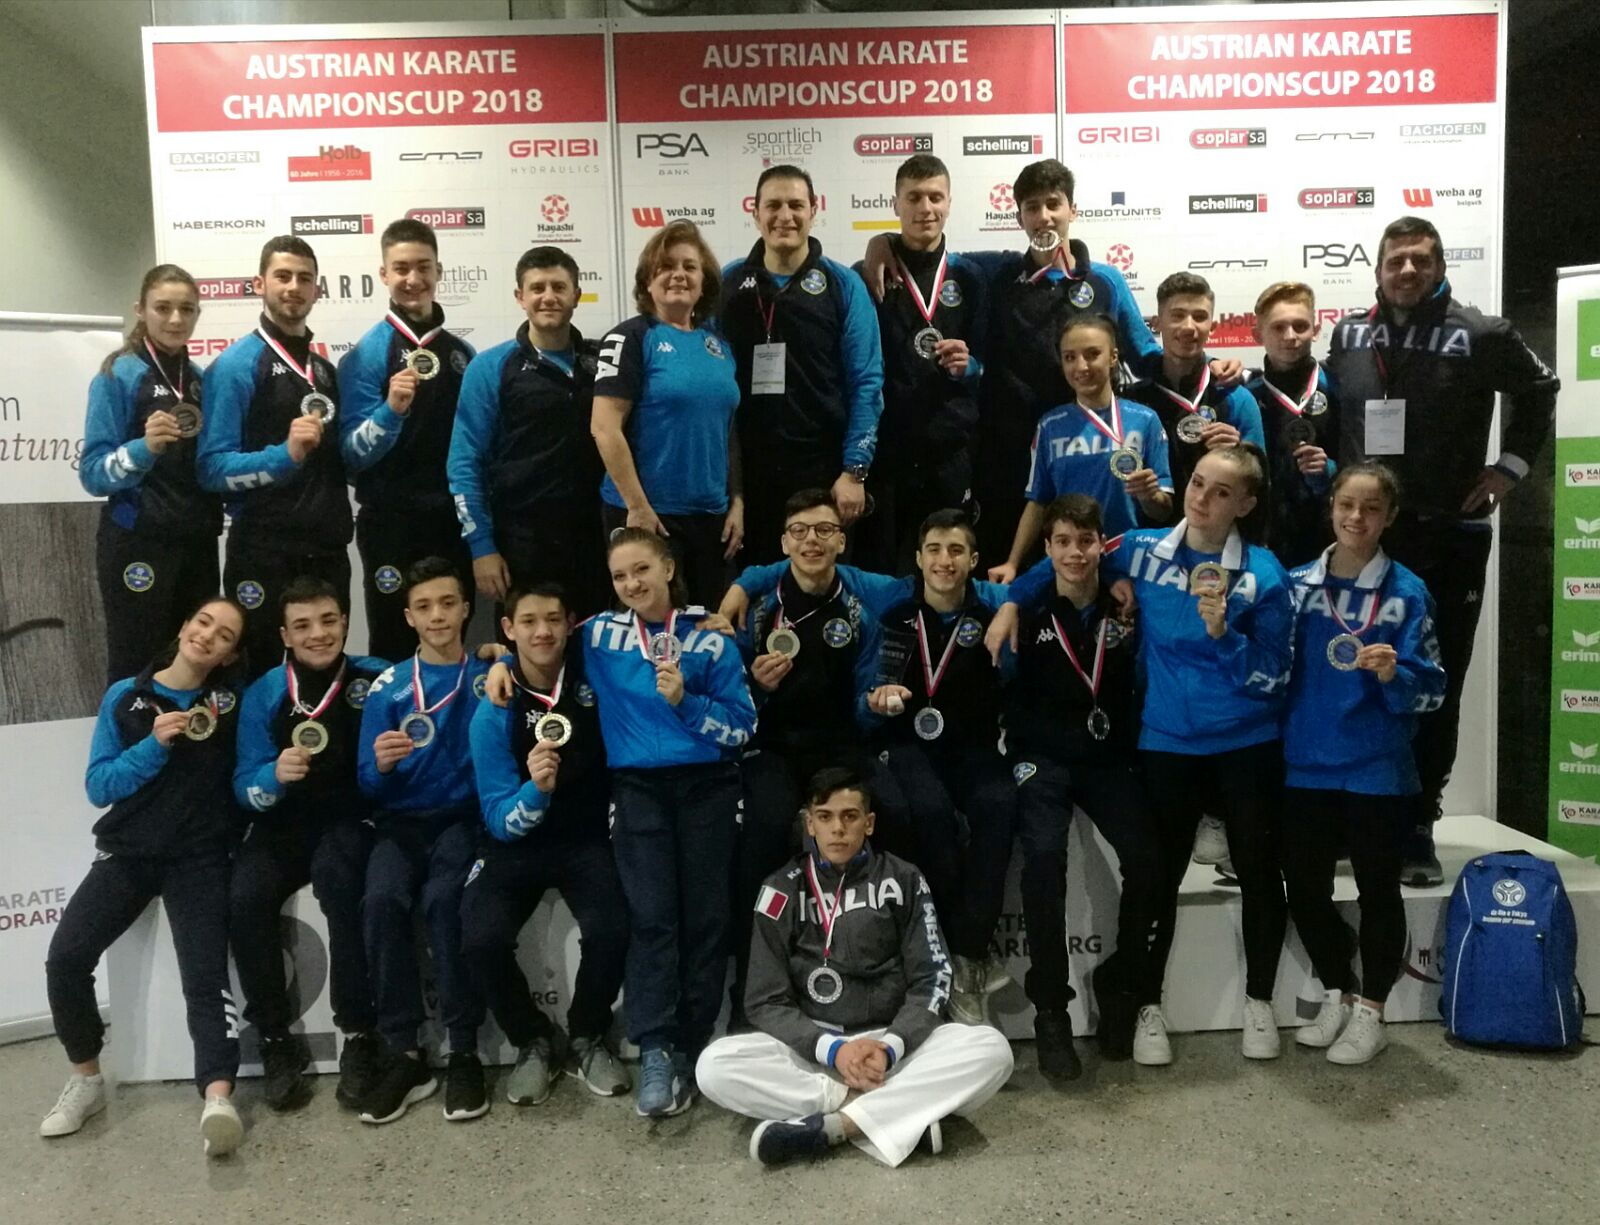 Gli azzurri dominano l'Austrian Karate Championscup: otto ori, sette argenti, tre bronzi!